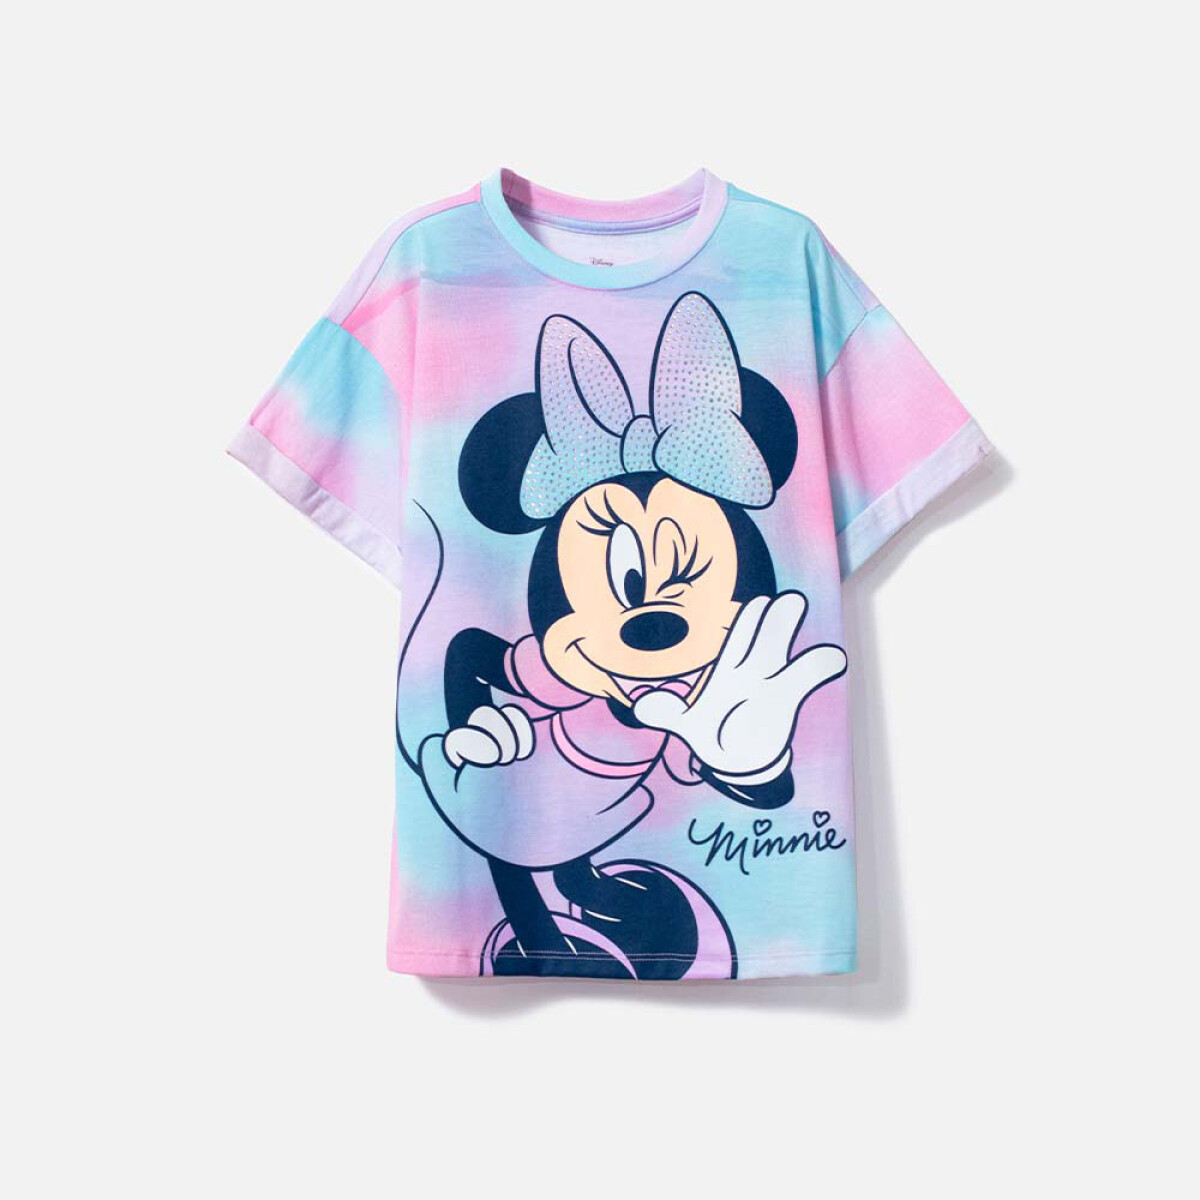 Camiseta niña Minnie - ROSA 